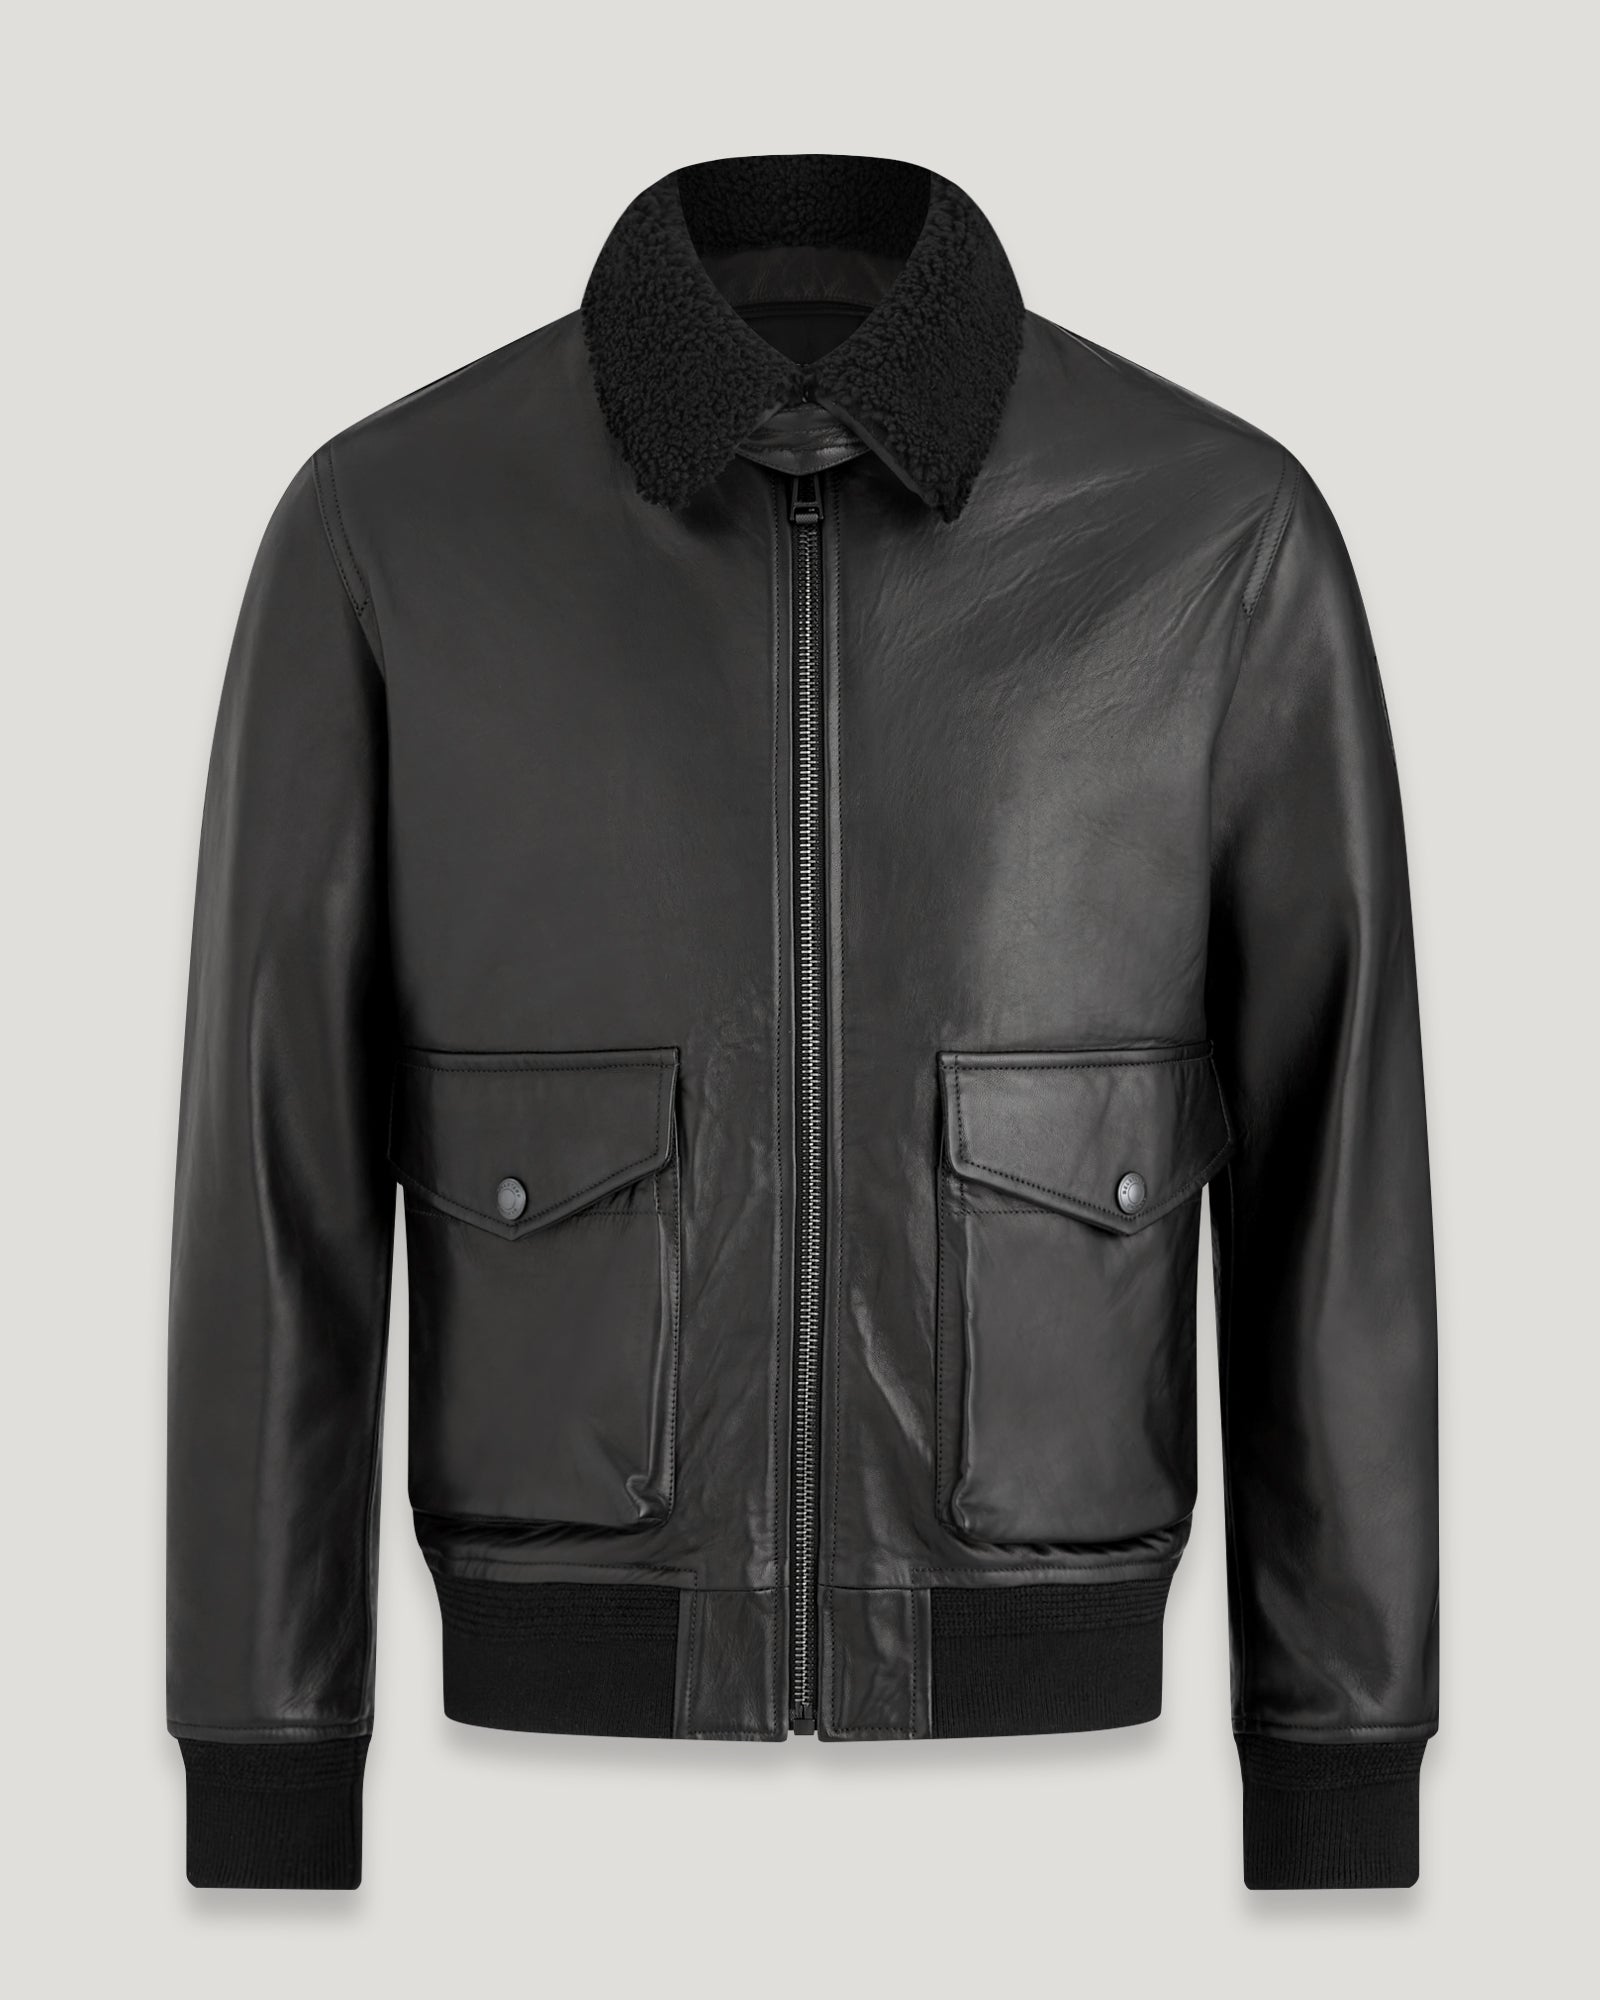 Chart Jacket in Black | Men's Leather Jackets | Belstaff US